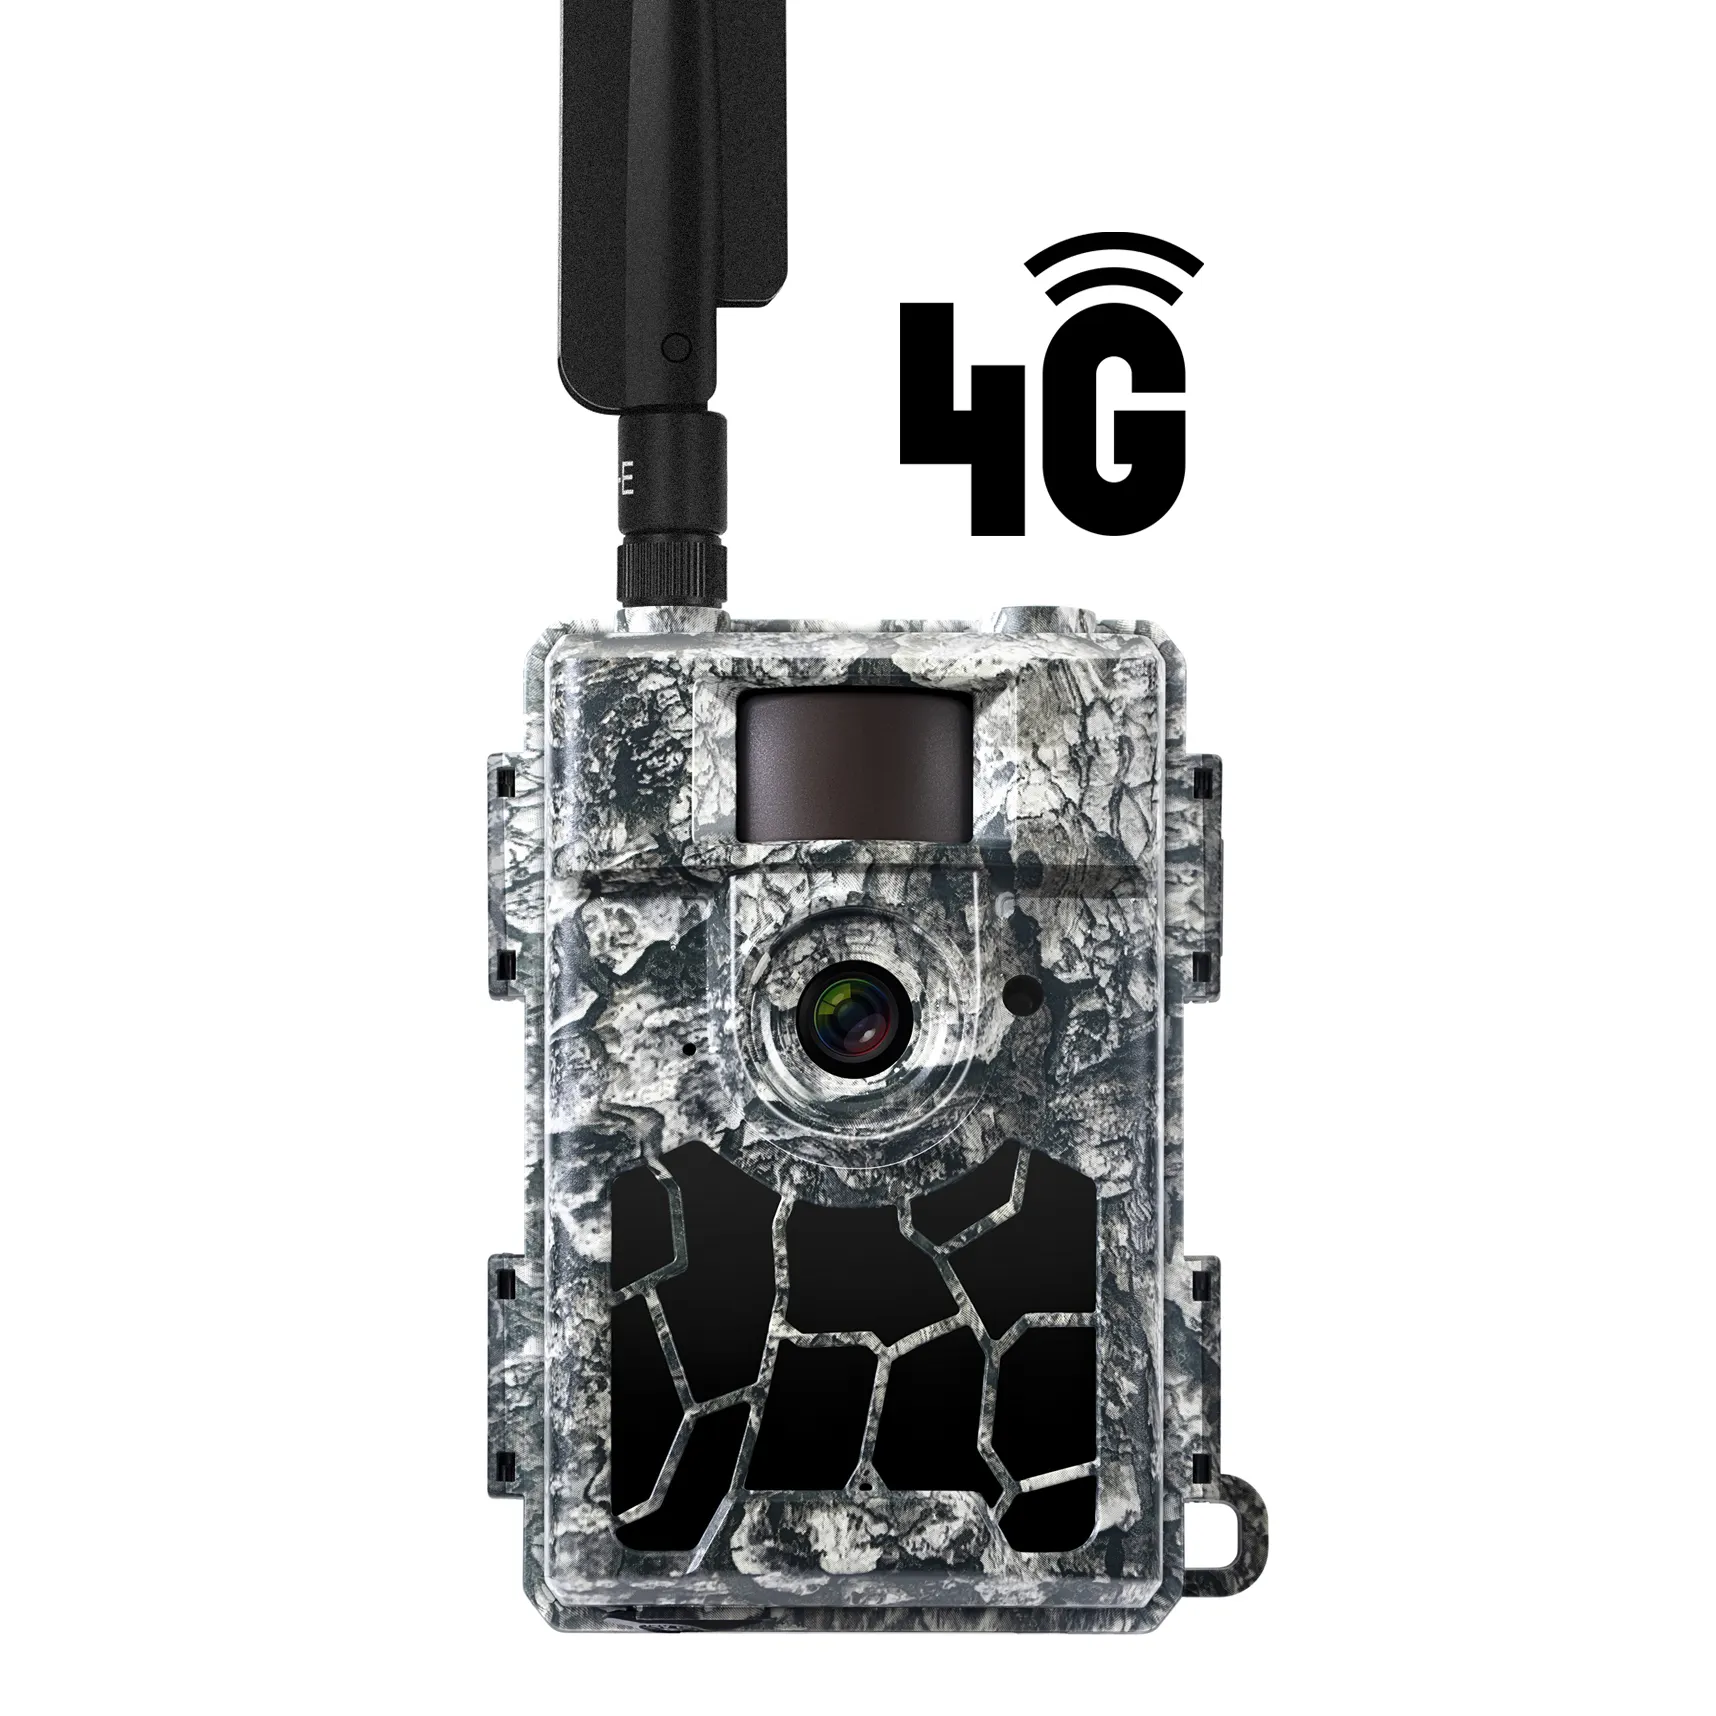 WILLFINE OEM ODM extérieur 4G photo piège trailcam 0.4s temps de déclenchement rapide caméra de piste de chasse